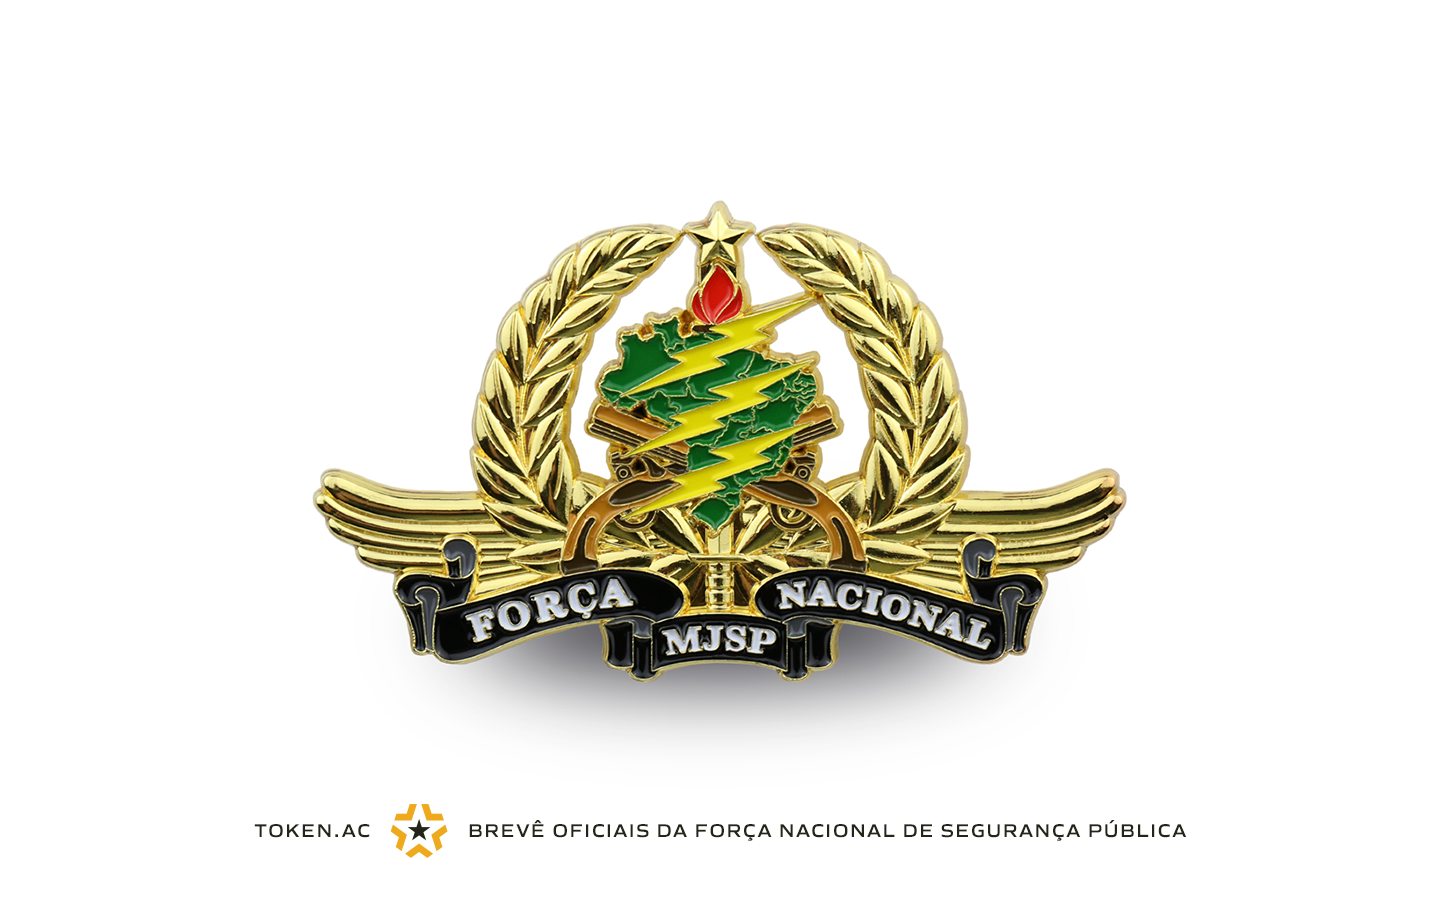 Brevê Oficiais da Força Nacional de Segurança Pública